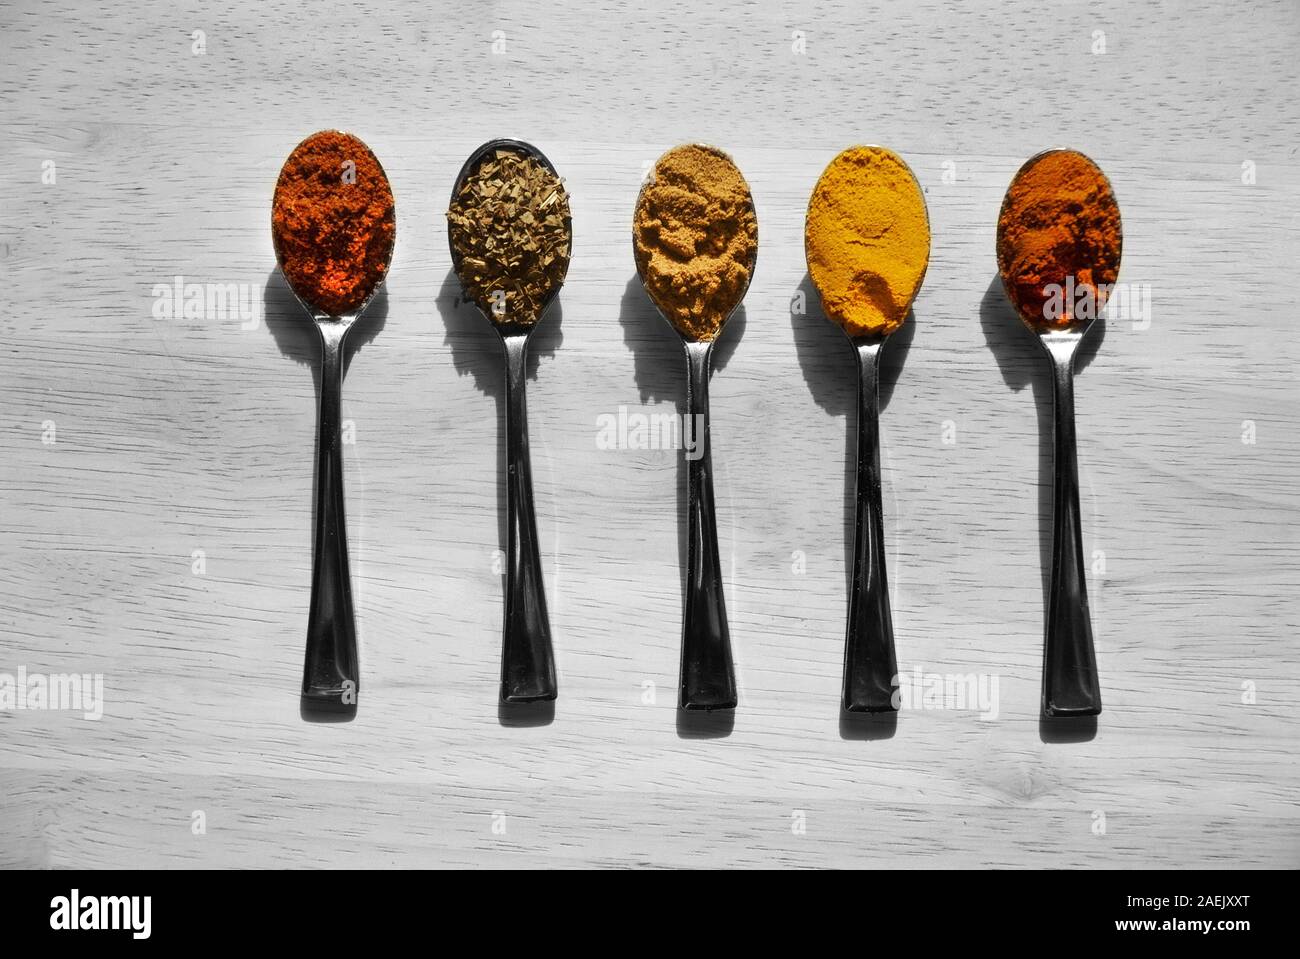 RAINBOW SAPORE: Mini cucchiai con spezie colorate giaceva su un bianco e nero tela di legno. Foto Stock